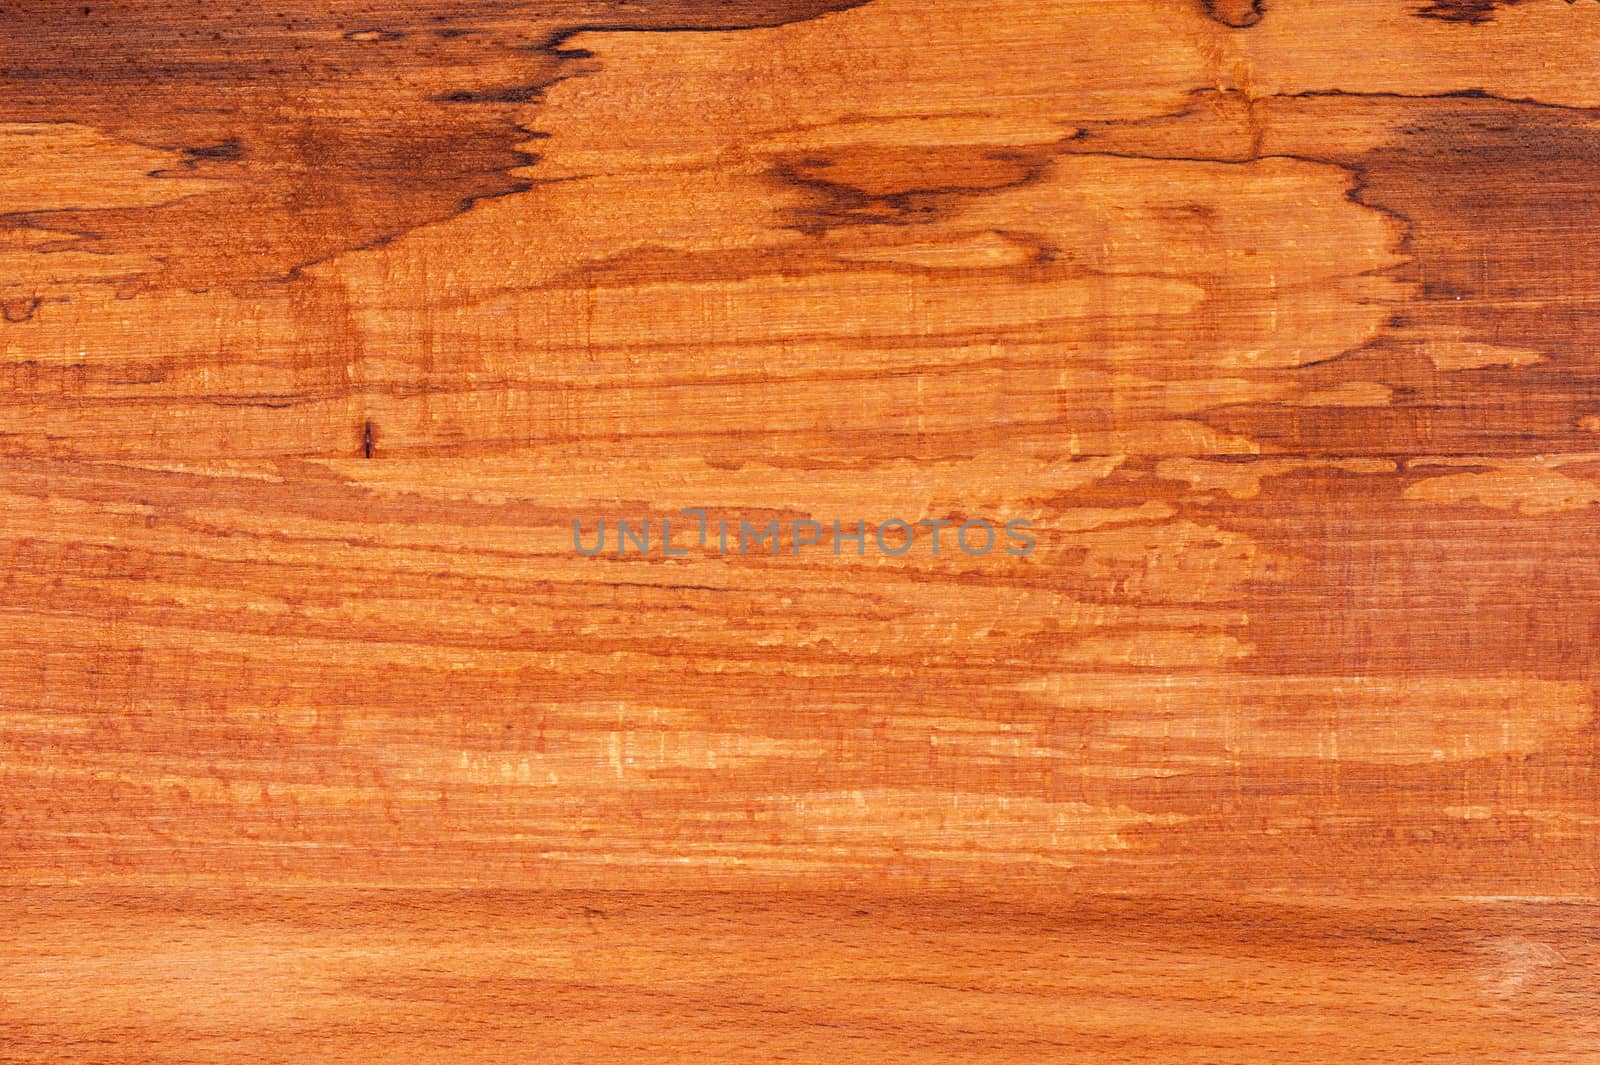 Knotty textured dark wood background, closeup